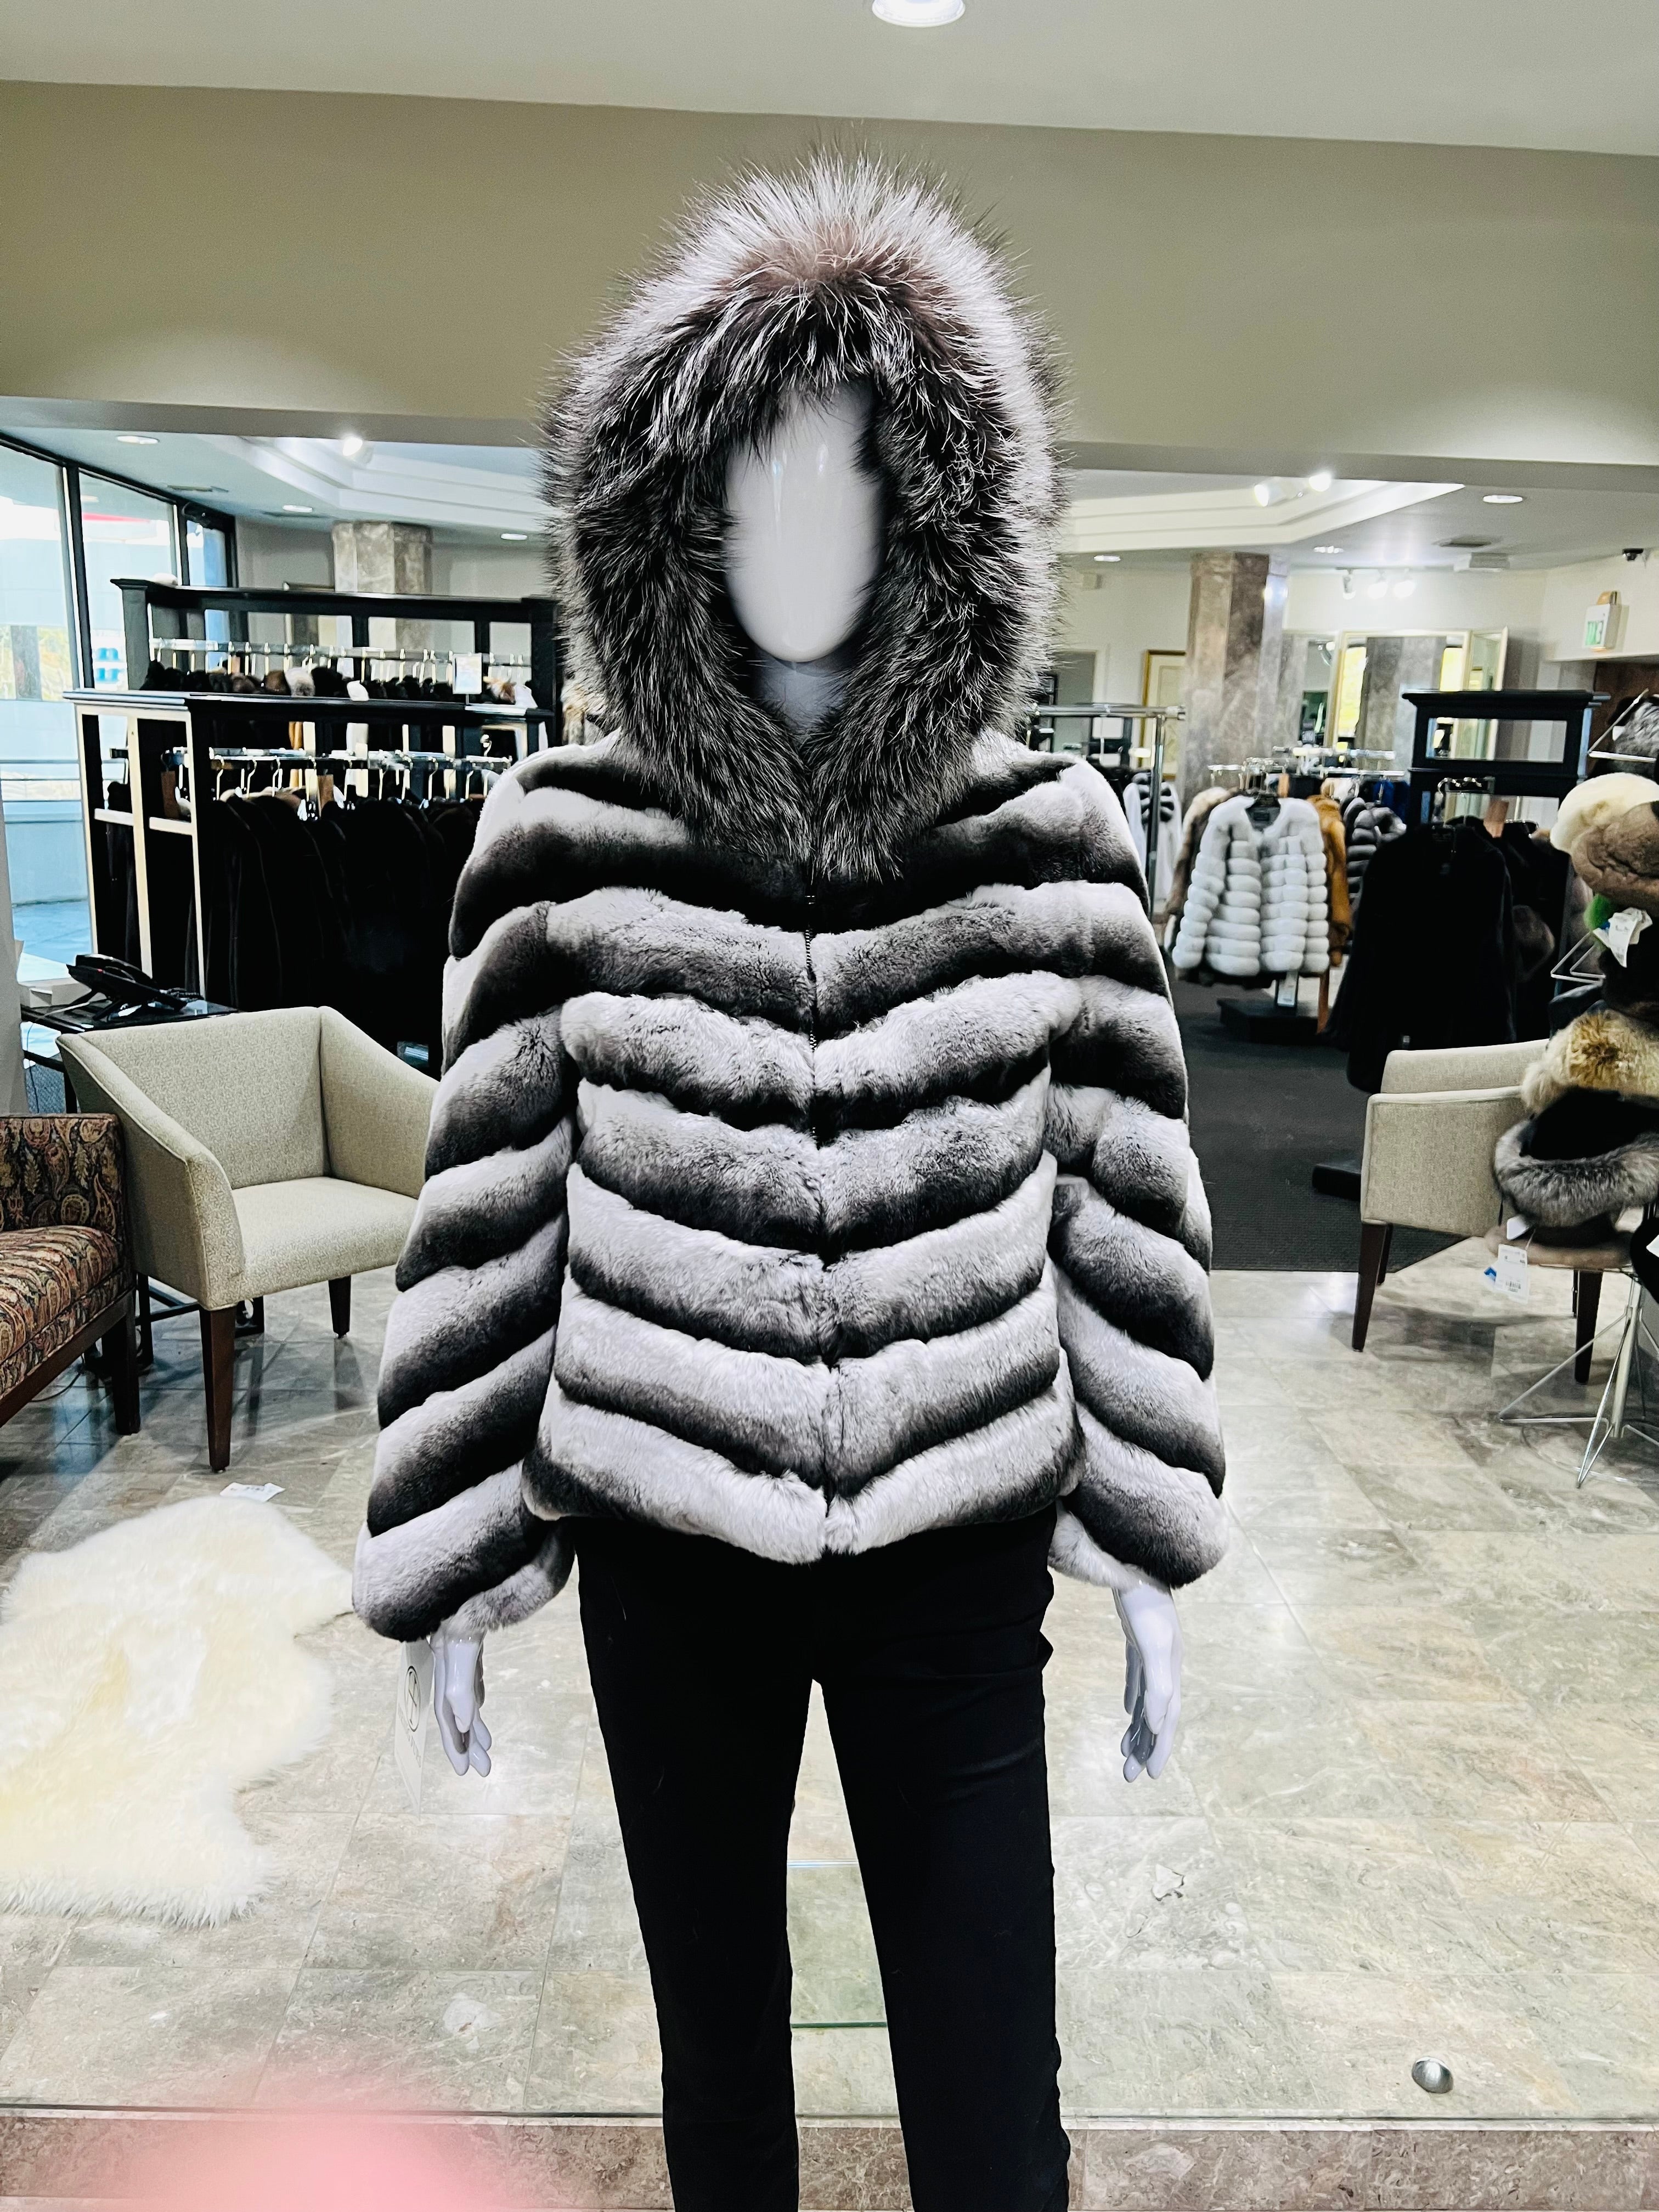 Fur Jacket - Rex Rabbit Fur with Fox Fur Collar - Grey